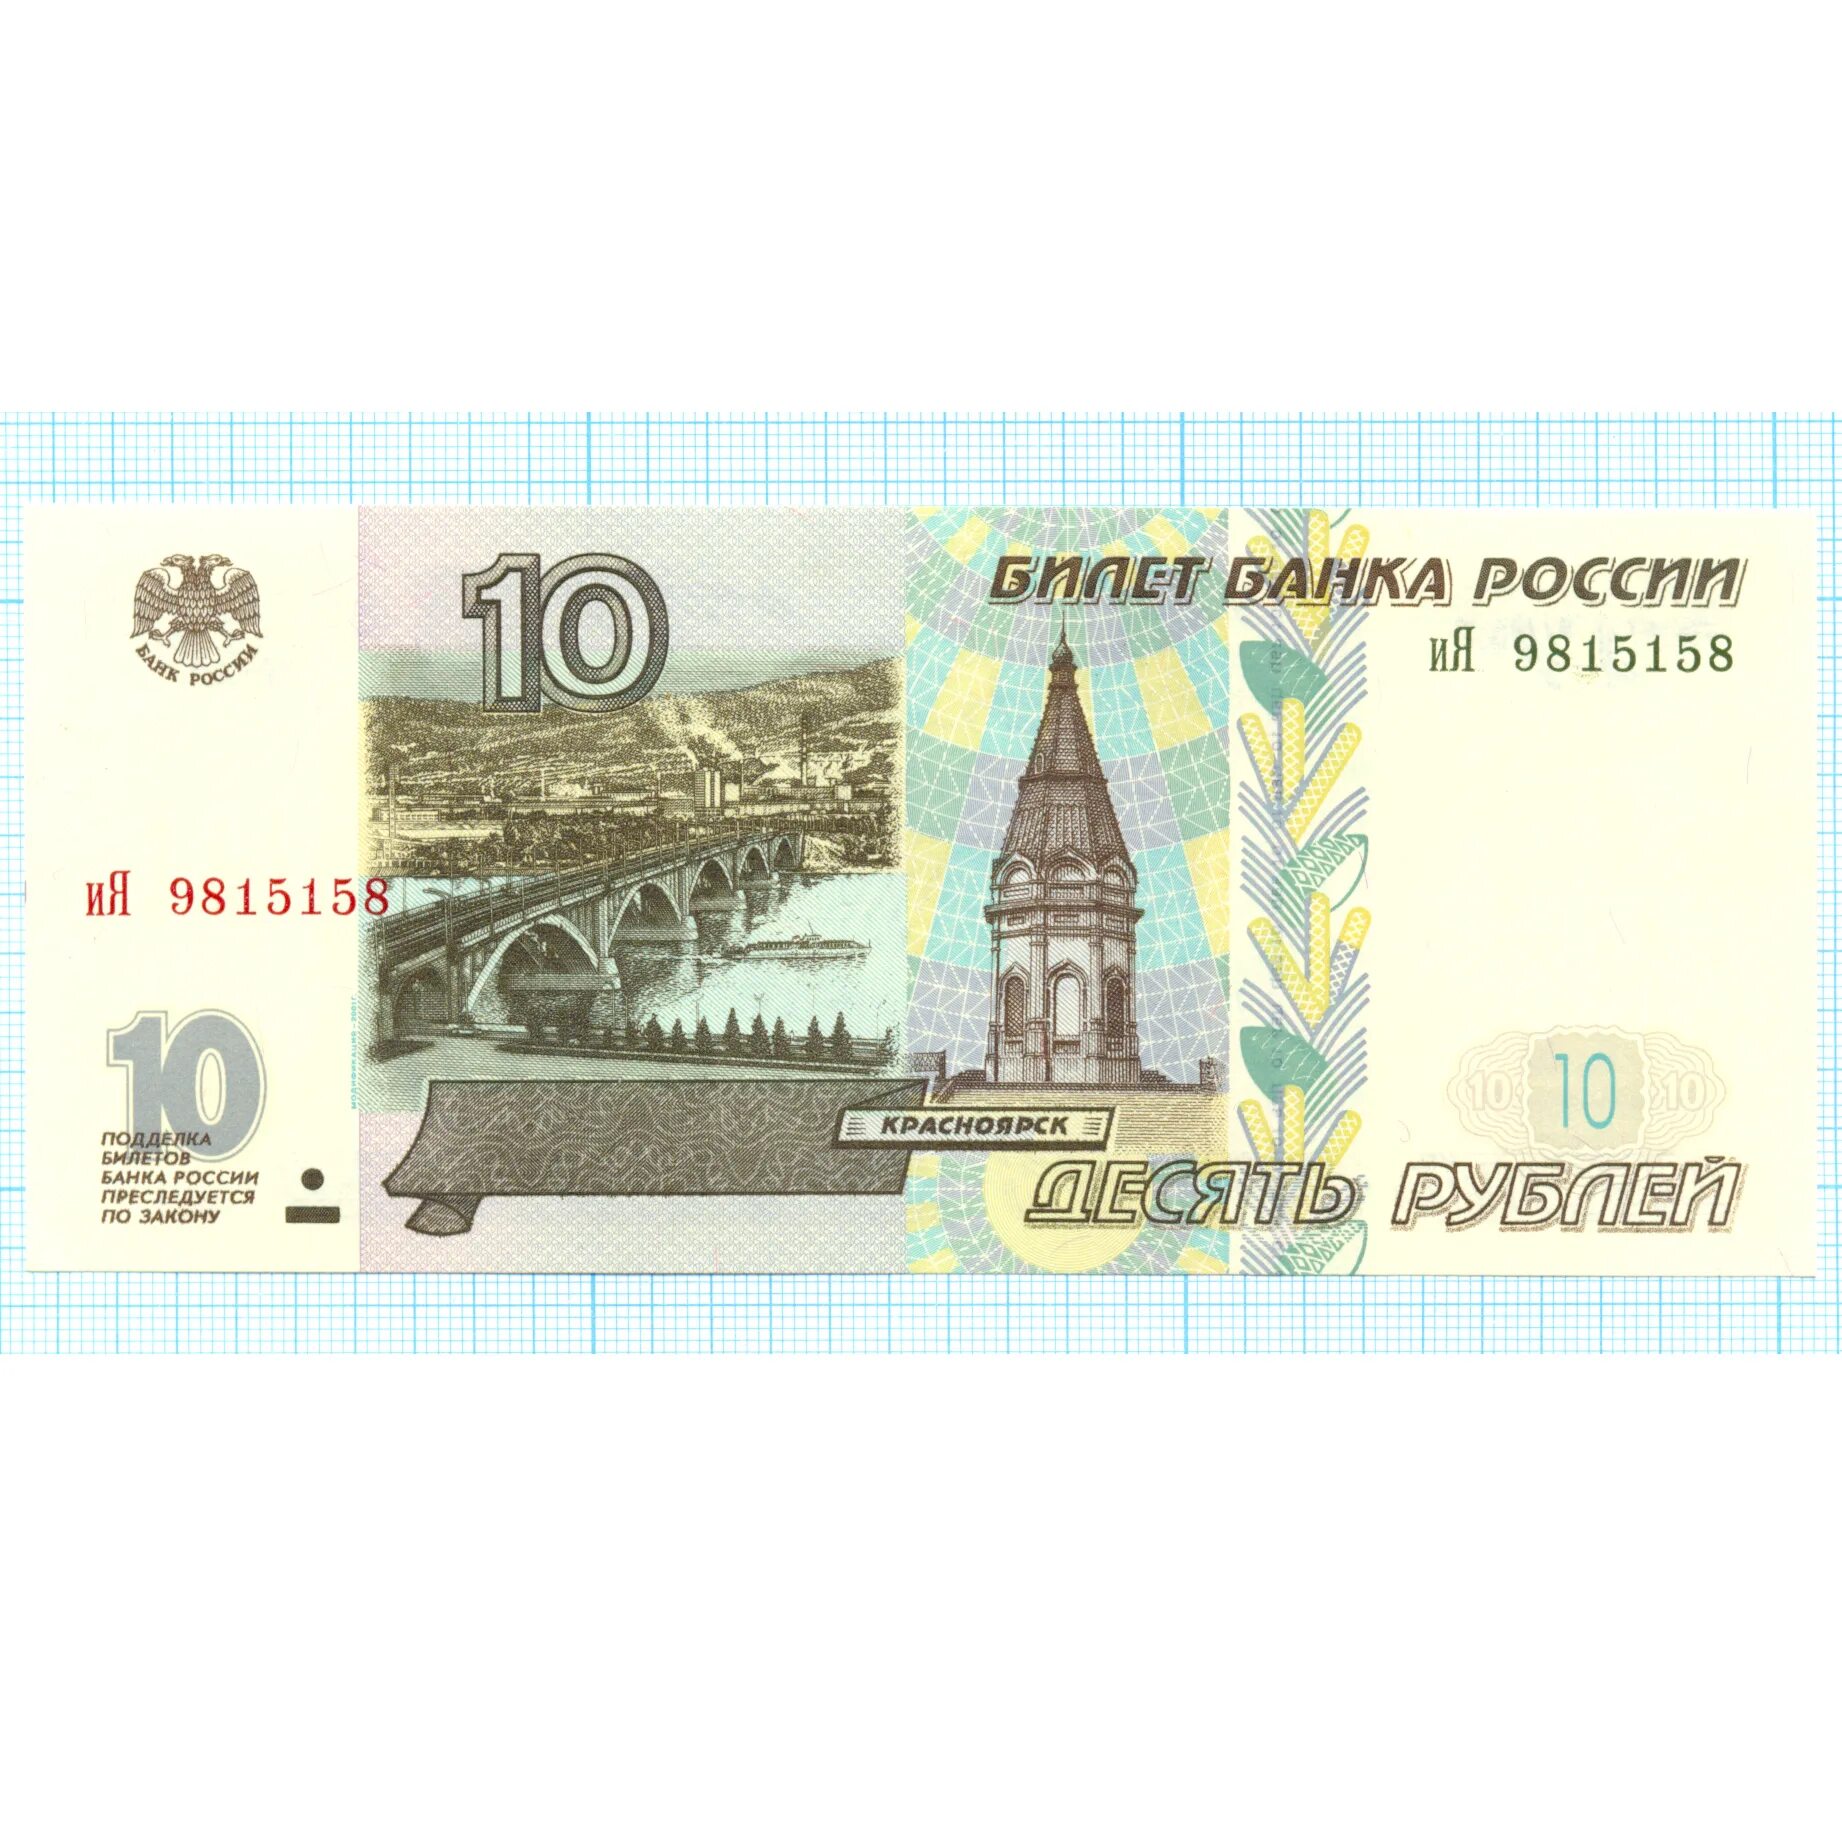 10 Рублей банкнота город. Купюра 10 р. 10 Рублей модификация 2001.